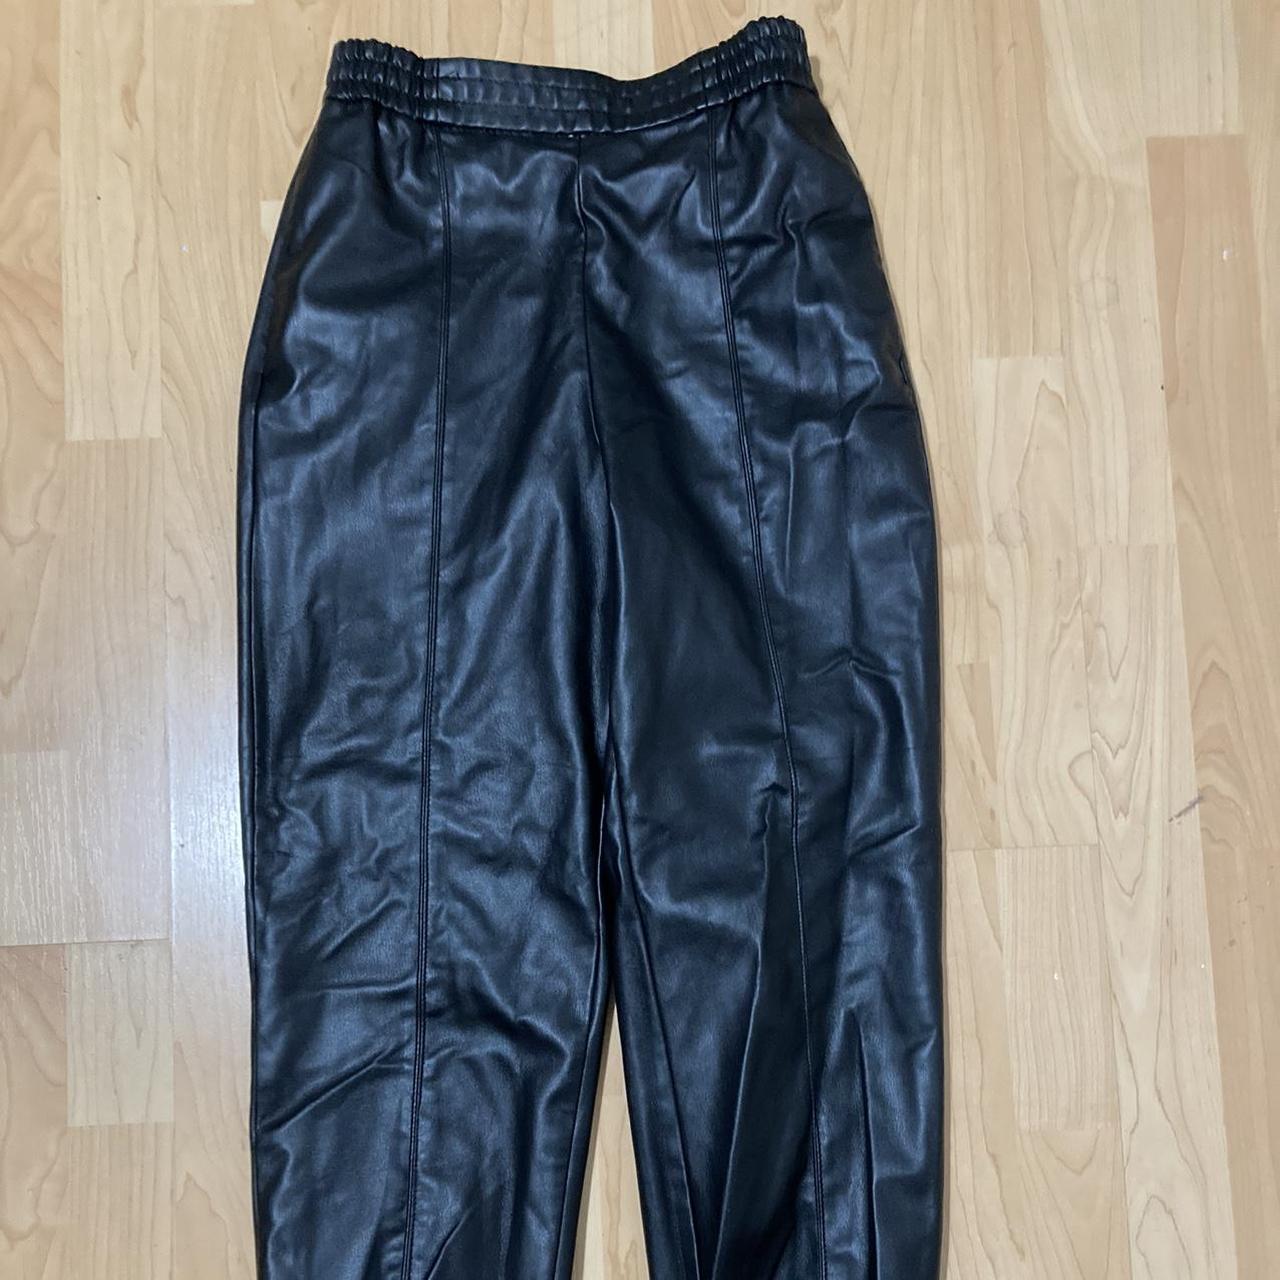 Zara faux leather cargo pants. - Depop